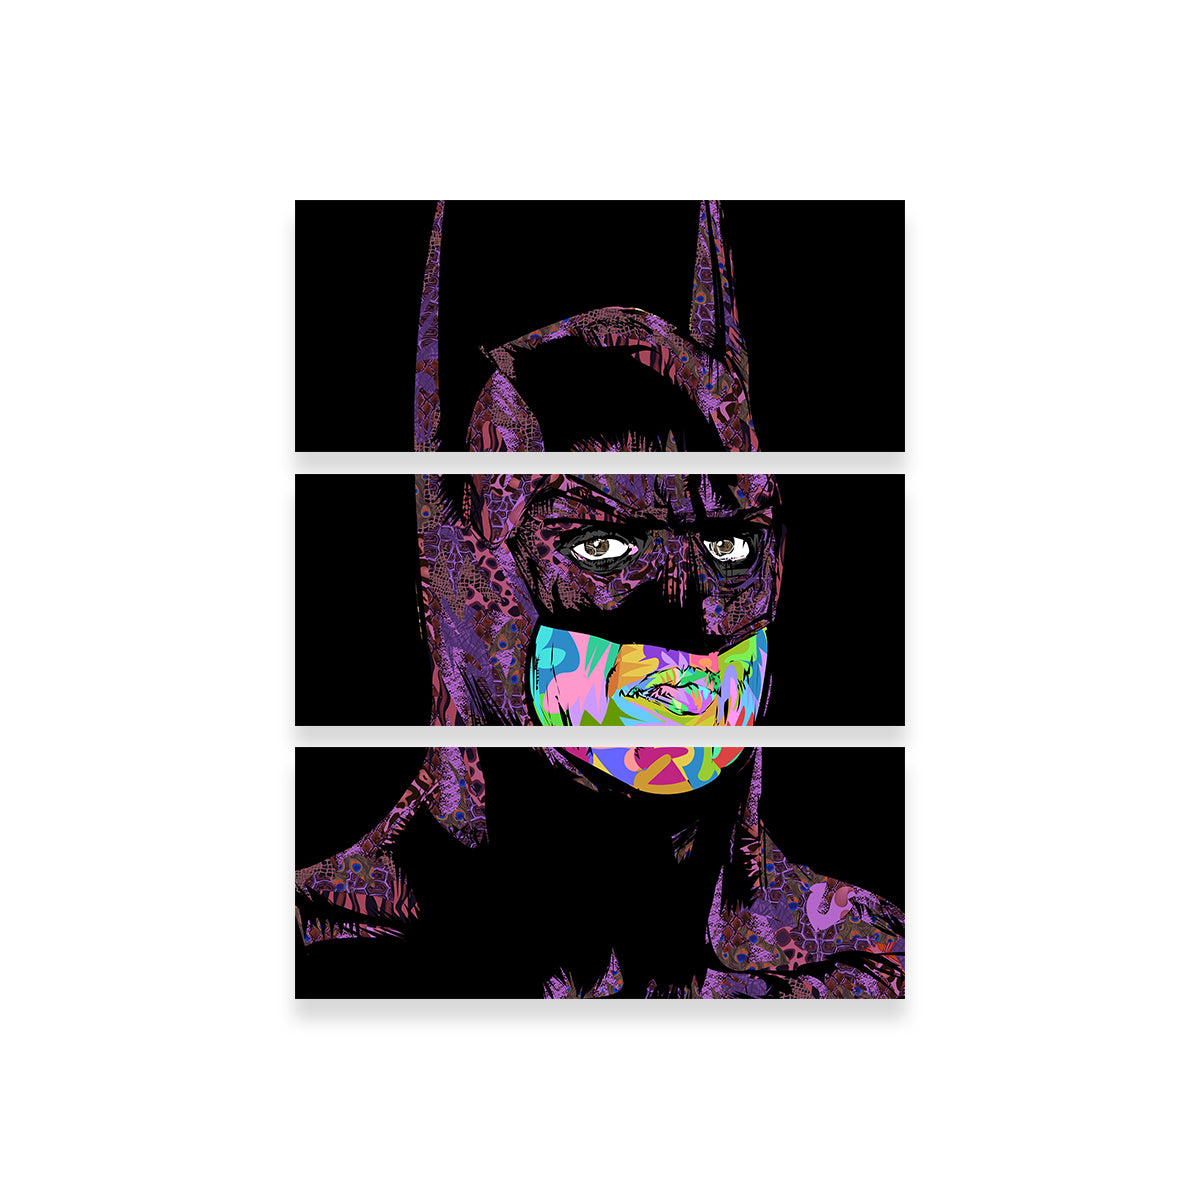 Batman Color